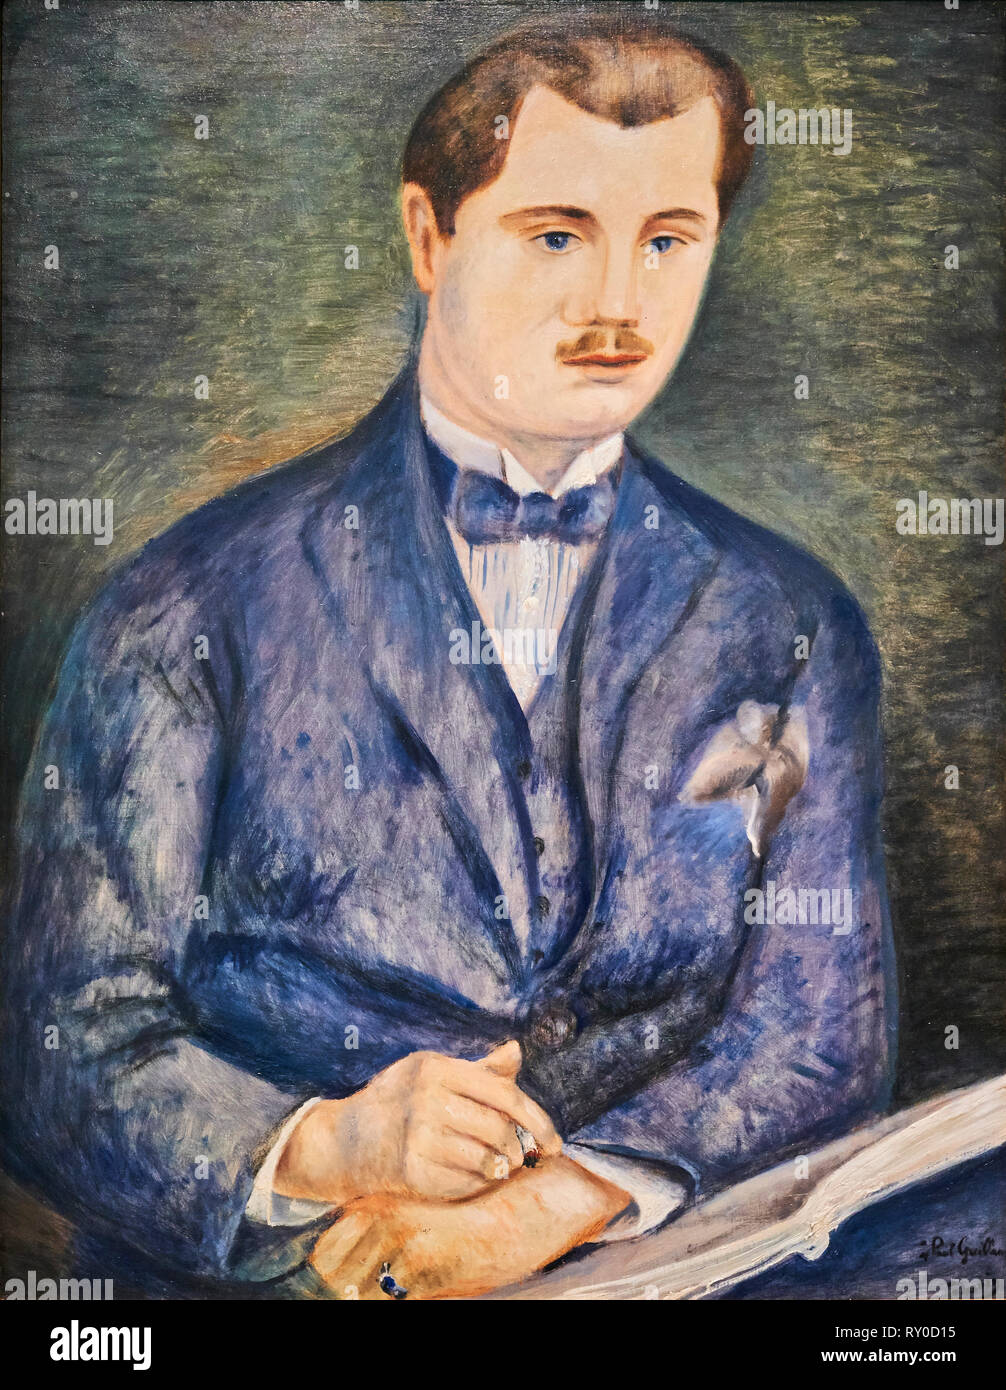 France, Paris, les Tuileries, museum of Orangerie, portrait of Paul Guillaume pby André Derain, 1919 Stock Photo